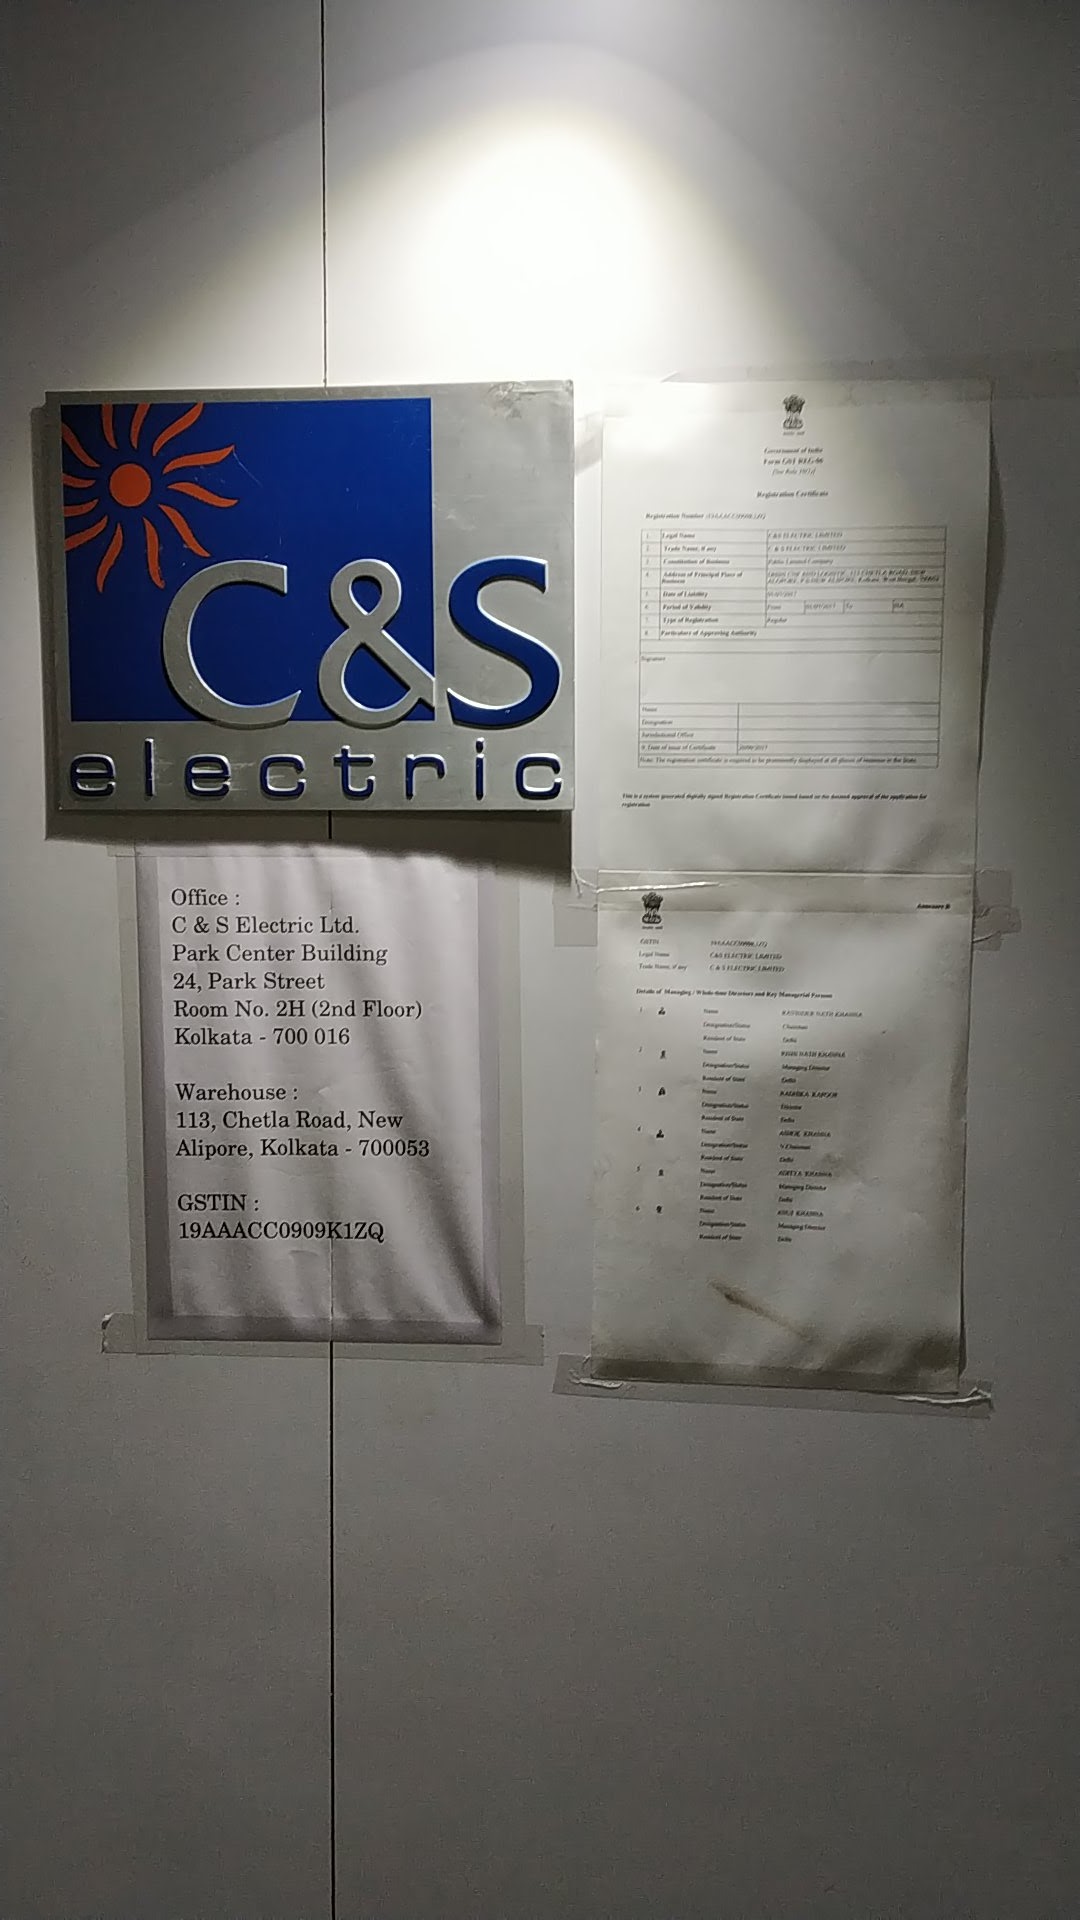 C&S Electric Ltd. (Kolkata Branch)